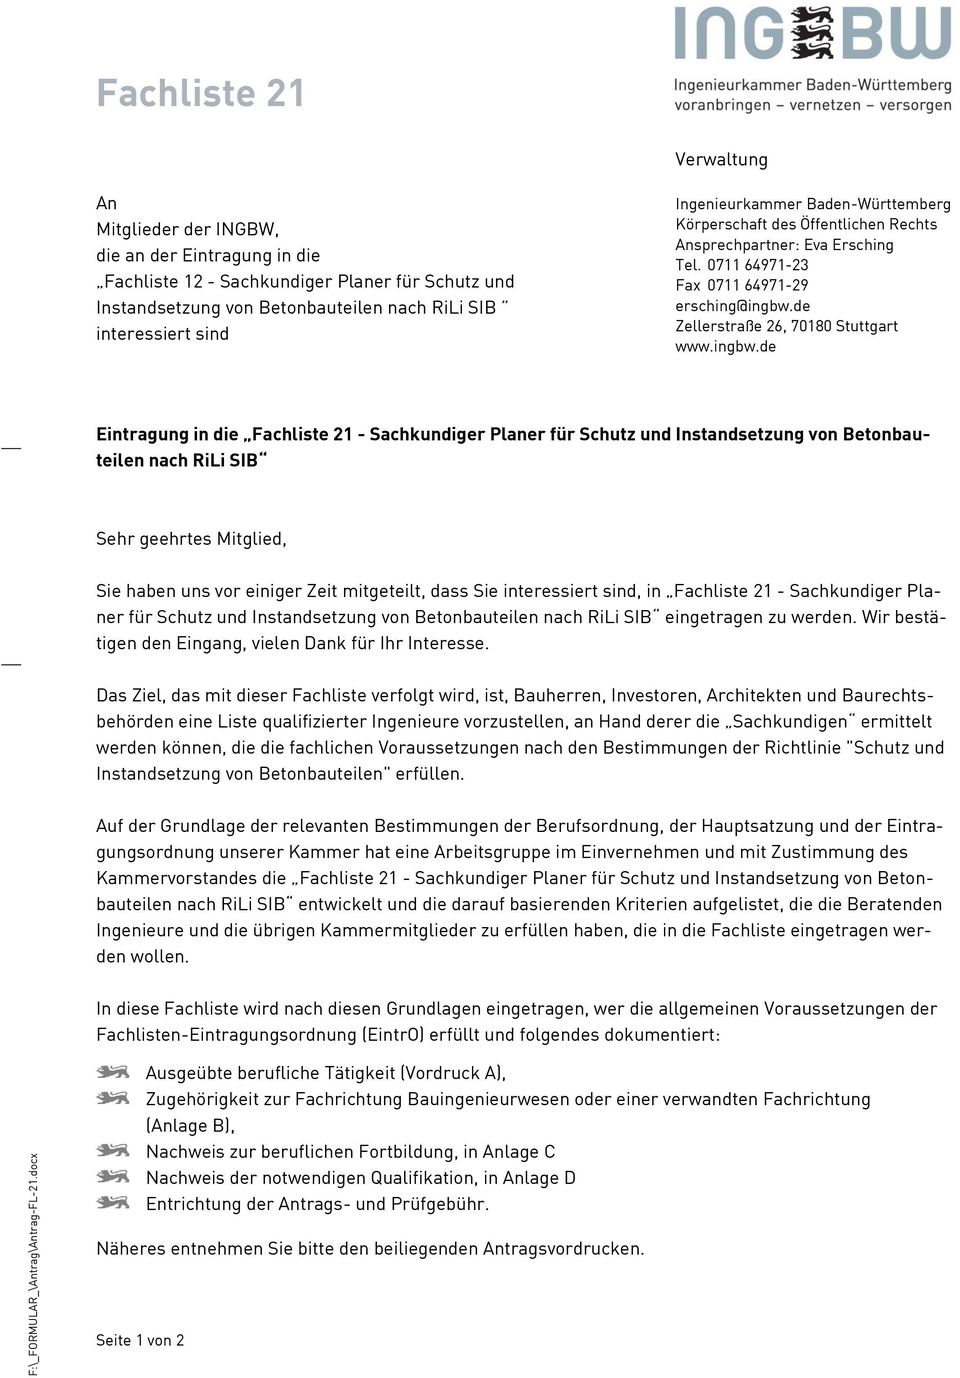 Ingenieurkammer Baden-Württemberg Körperschaft des Öffentlichen Rechts Ansprechpartner: Eva Ersching Tel. 0711 64971-23 Fax 0711 64971-29 ersching@ingbw.